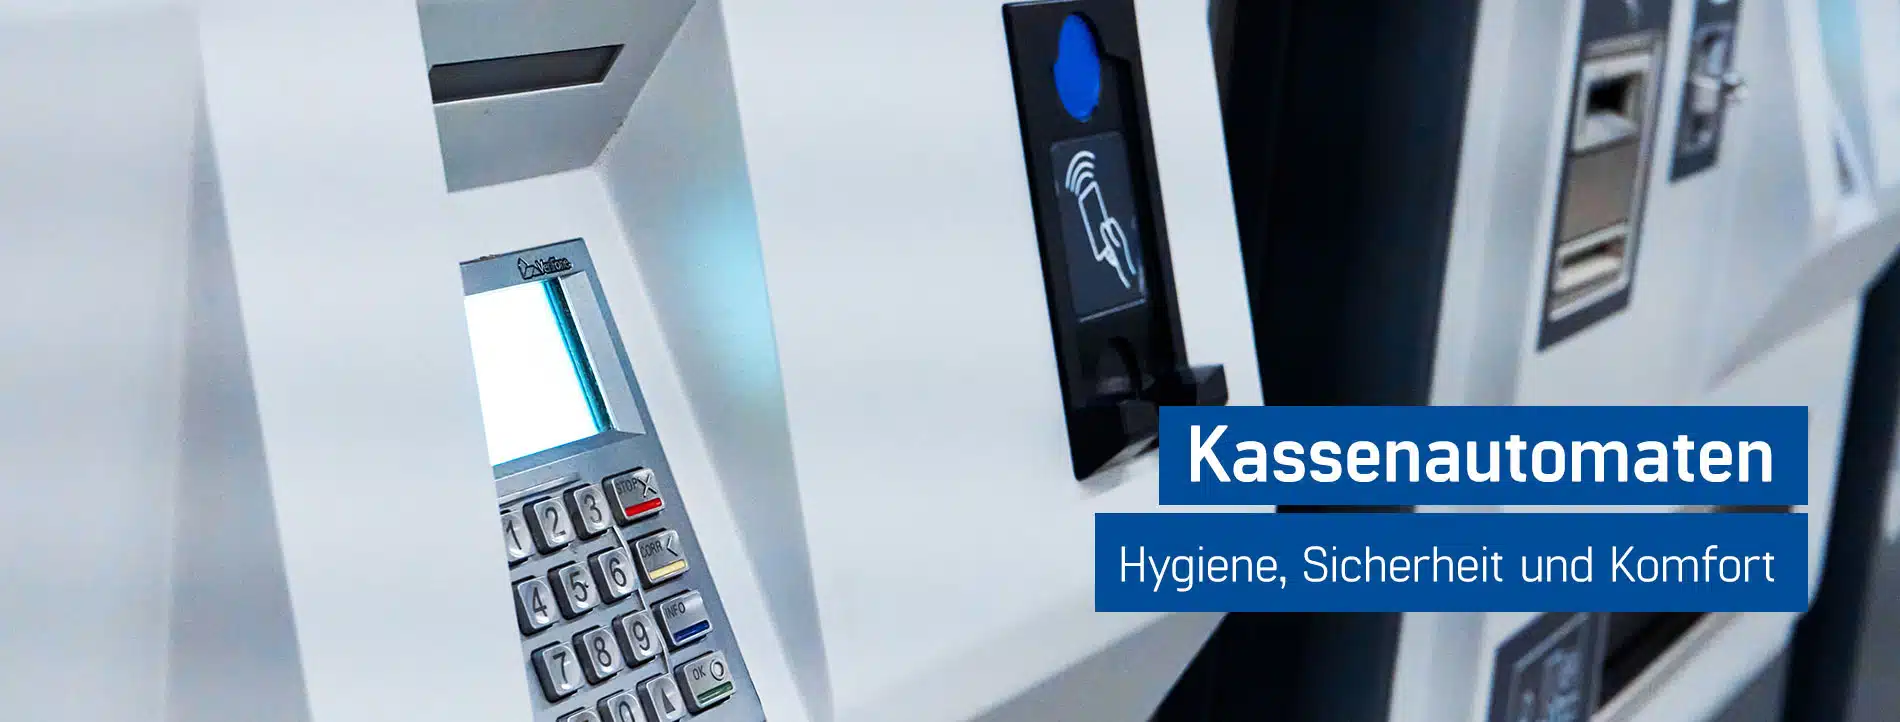 Weiße Kassenautomaten mit Kartenterminal für hygienische, sichere und komfortable Zahlungsabwicklung